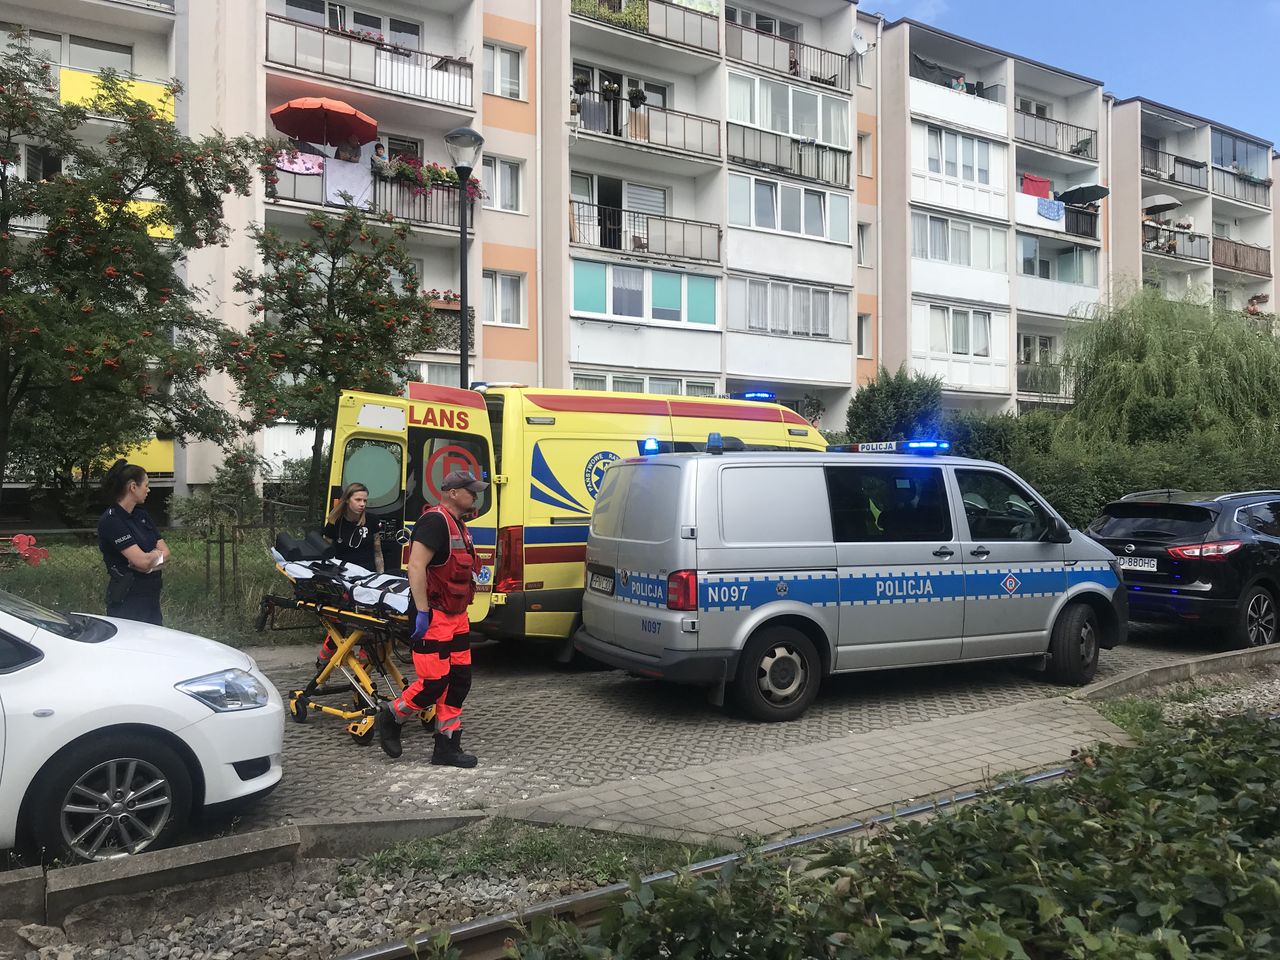 Potrącenie dziecka w Gdańsku. Chłopiec trafił do szpitala